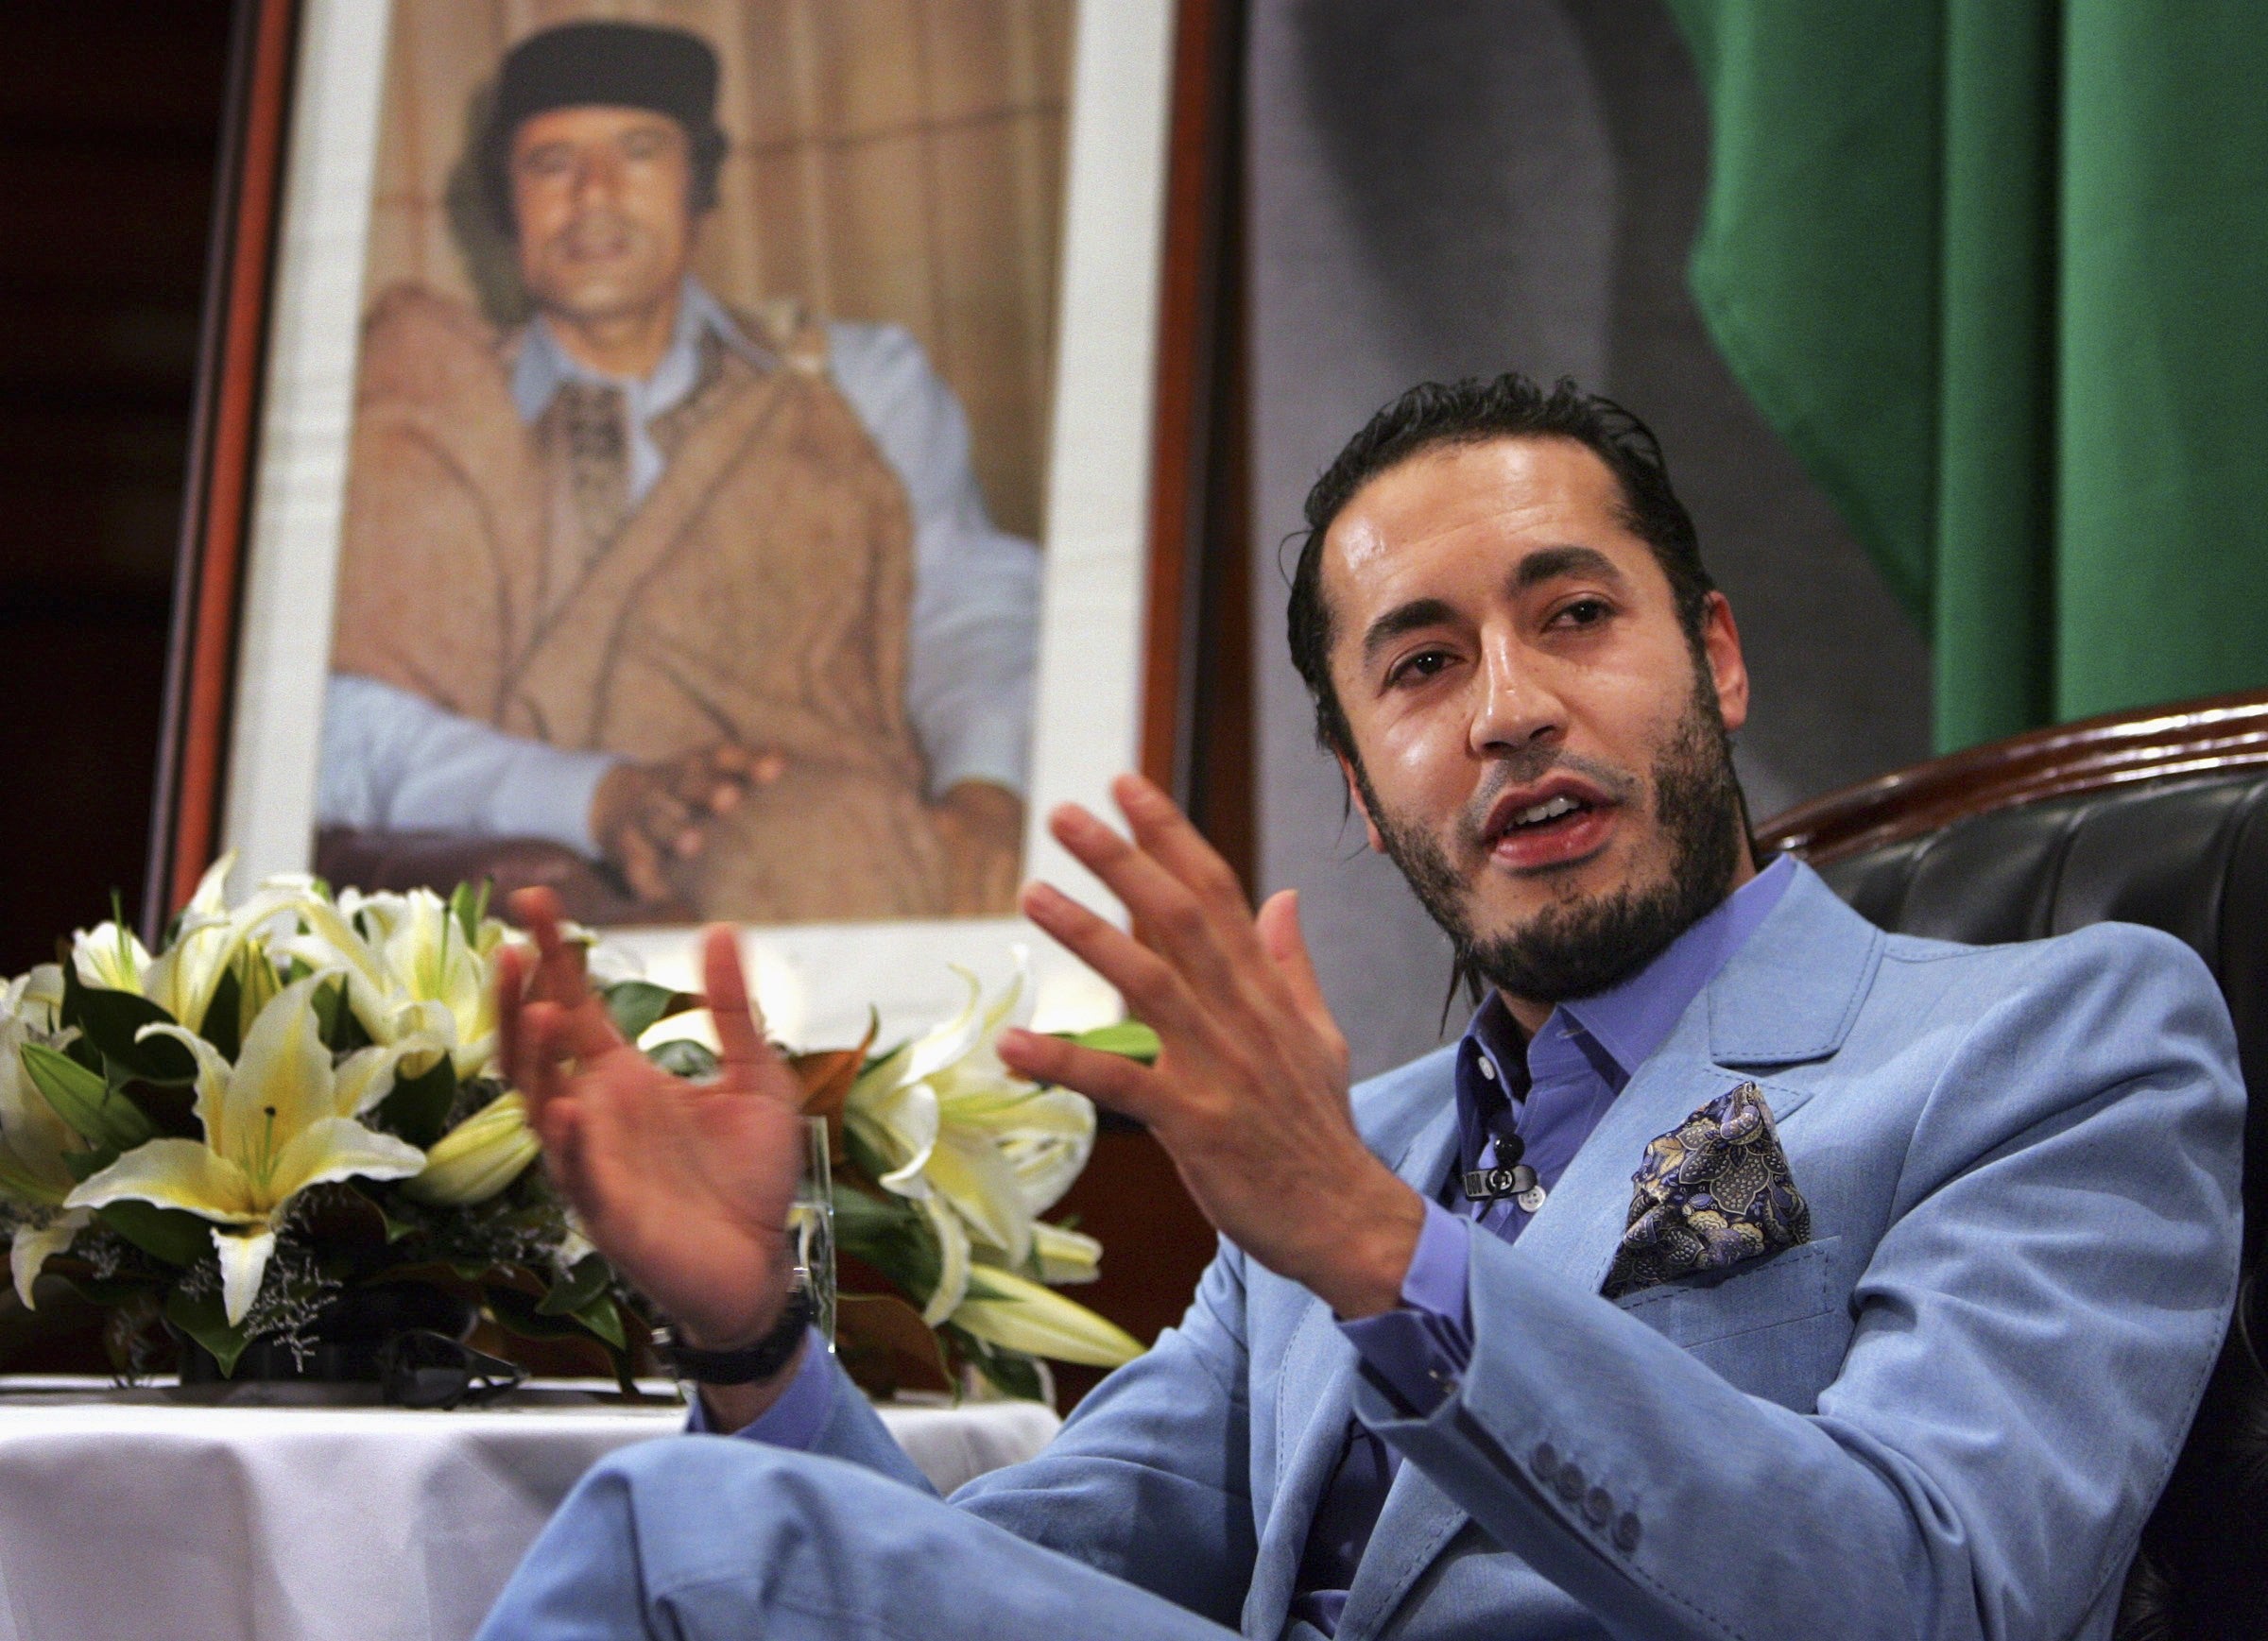 Al Saadi Gaddafi, the third son of Libyan leader Muammar Gaddafi speaks at a news conference in Sydney in 2005